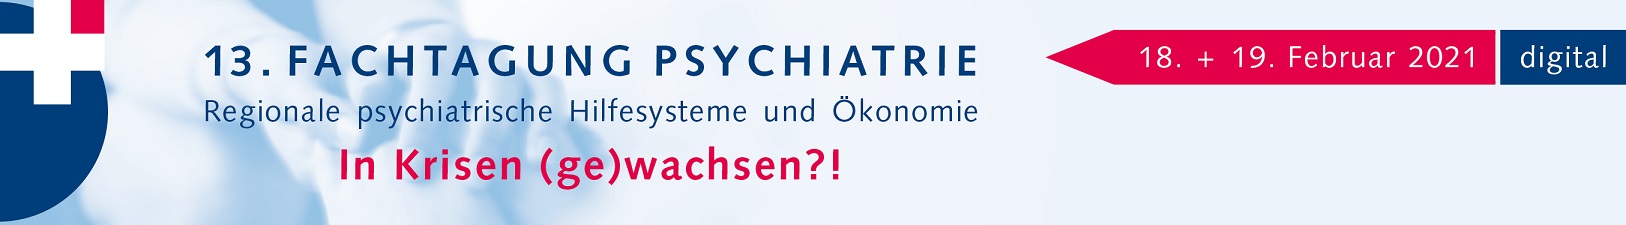 Banner der Fachtagung Psychiatrie